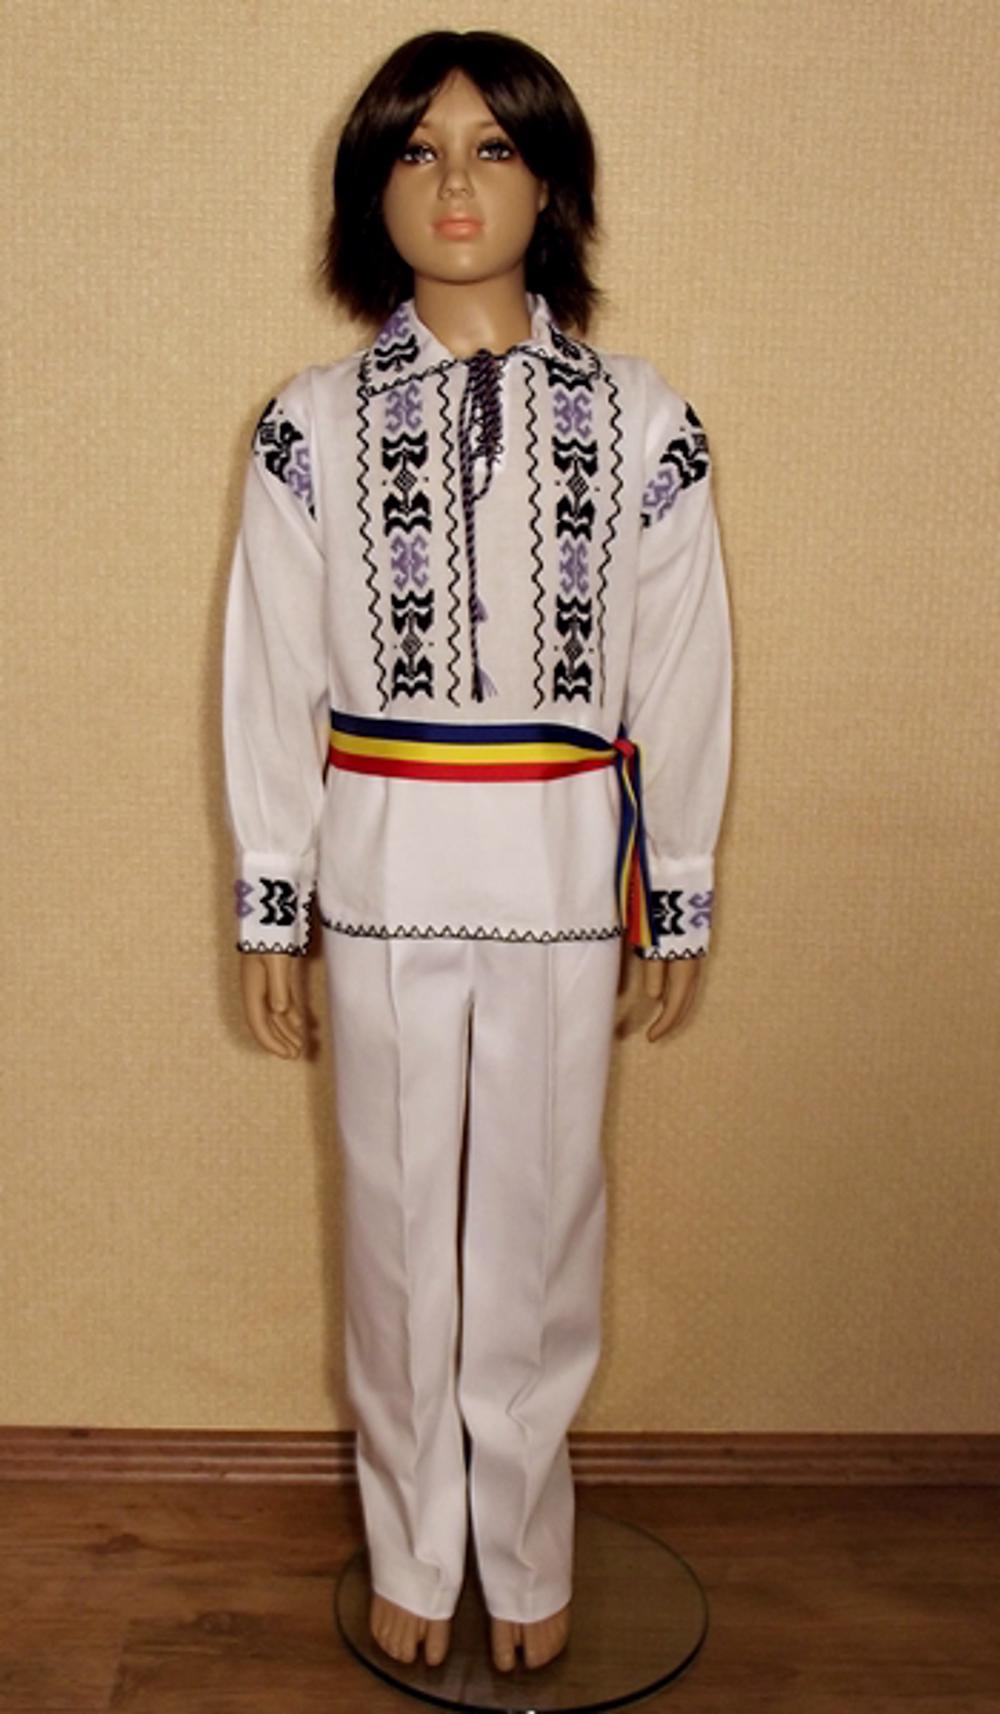 Costum Popular Baietei Mihnea